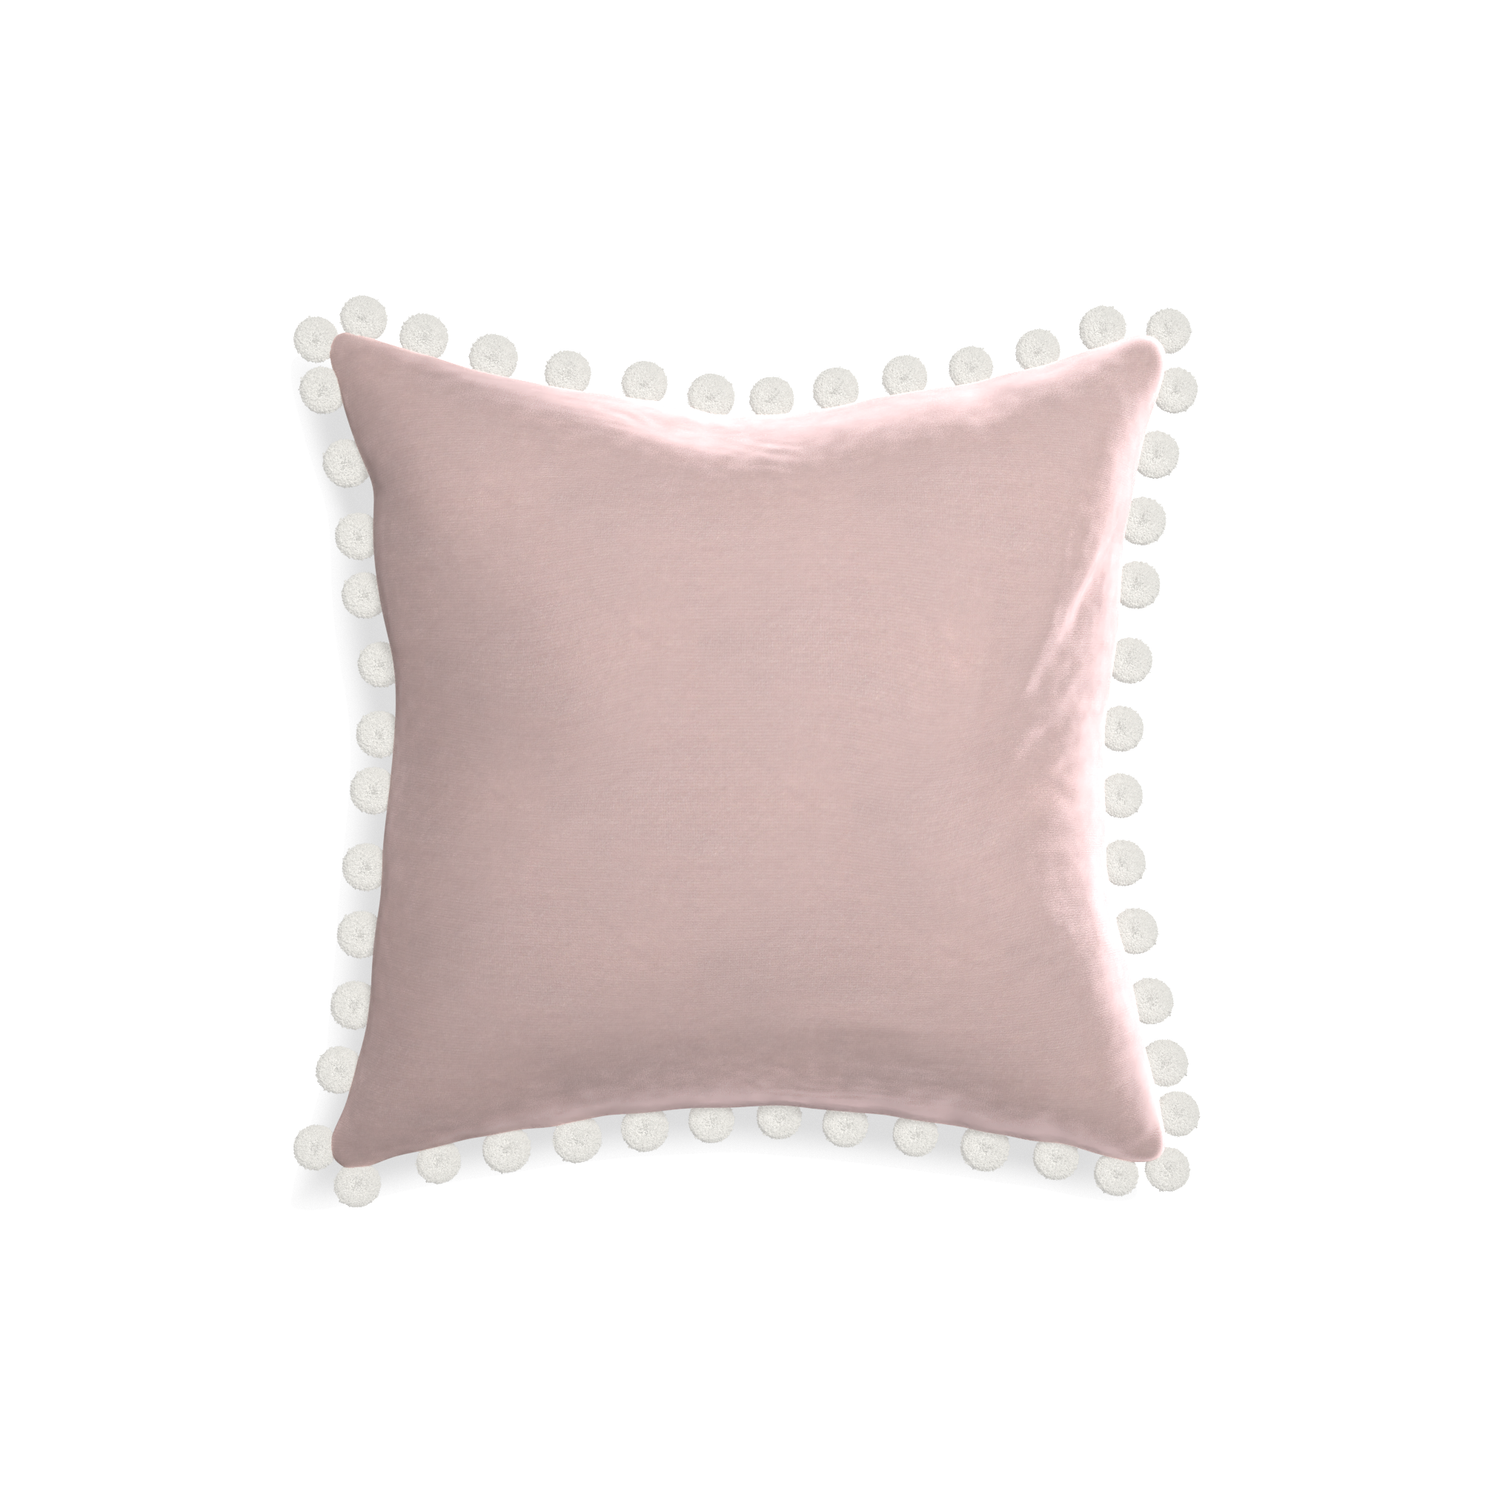 18-square rose velvet custom pillow with snow pom pom on white background